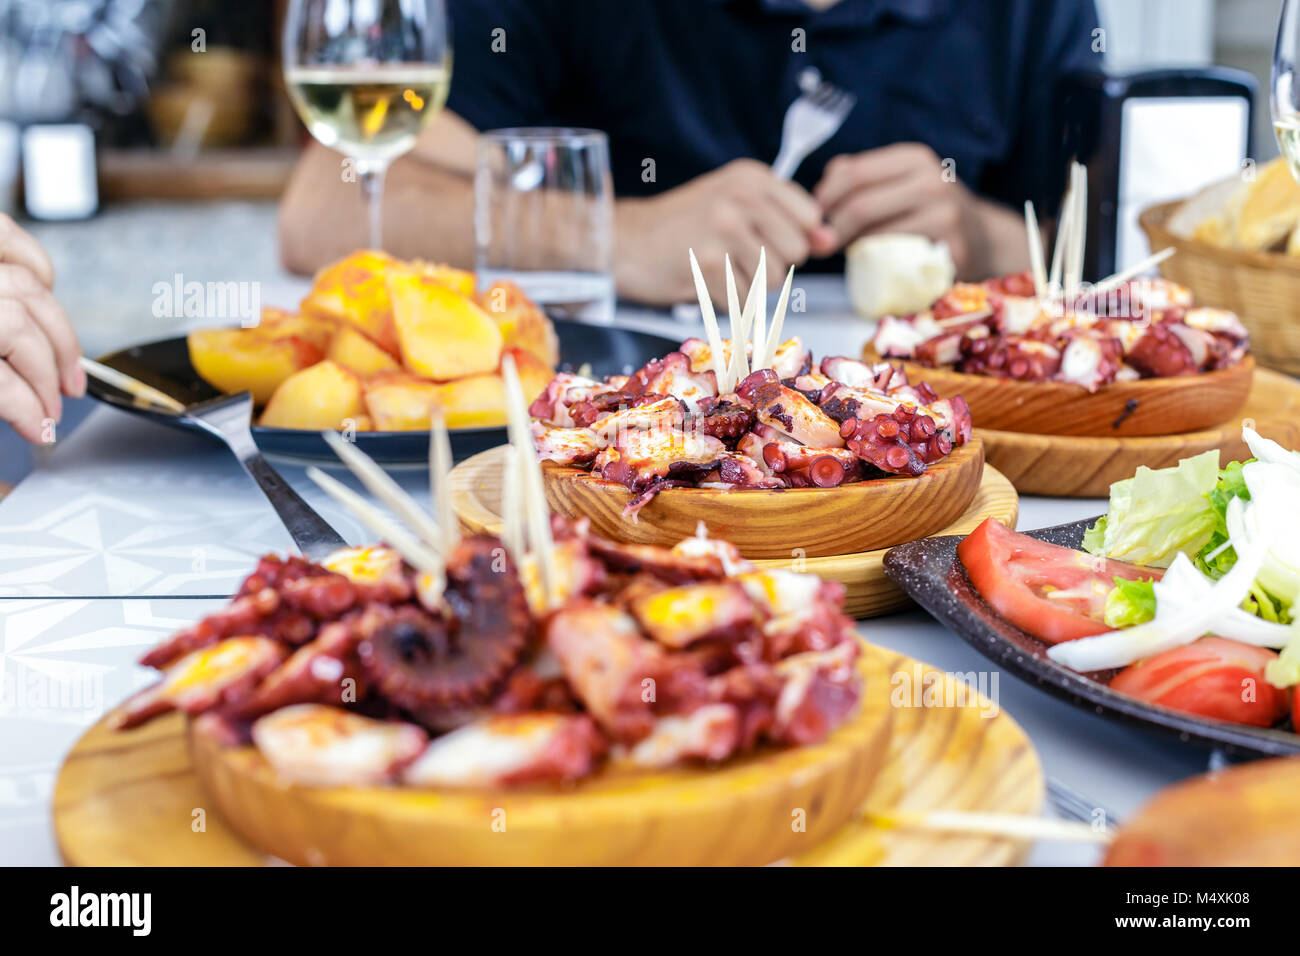 Les personnes mangeant Pulpo a la gallega avec pommes de terre. Poulpe galicien plats. Plats célèbres de la Galice, Espagne. Banque D'Images